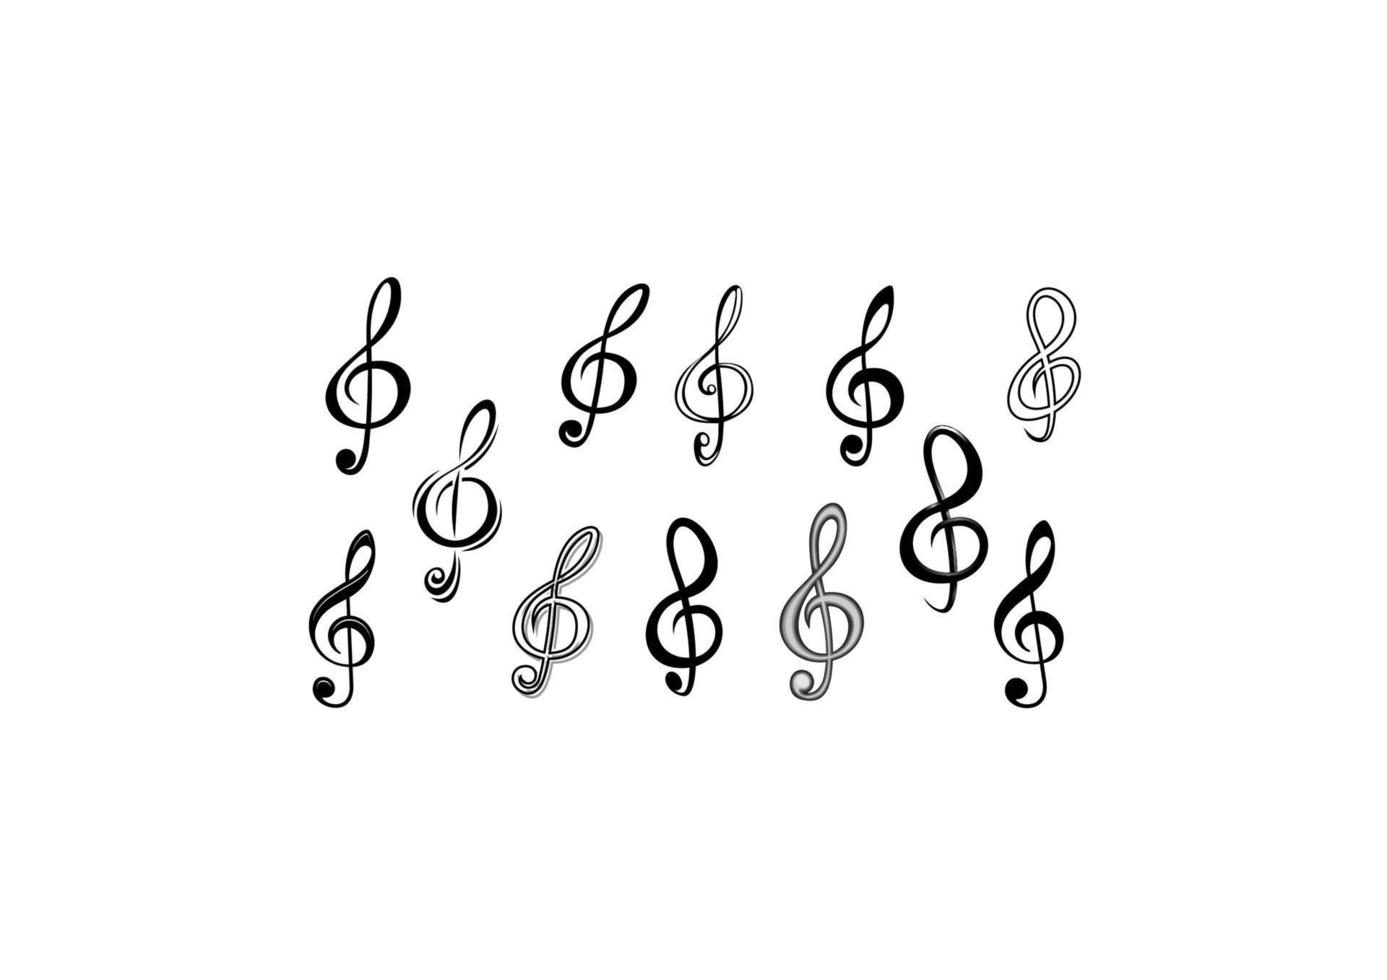 Music note keys vector